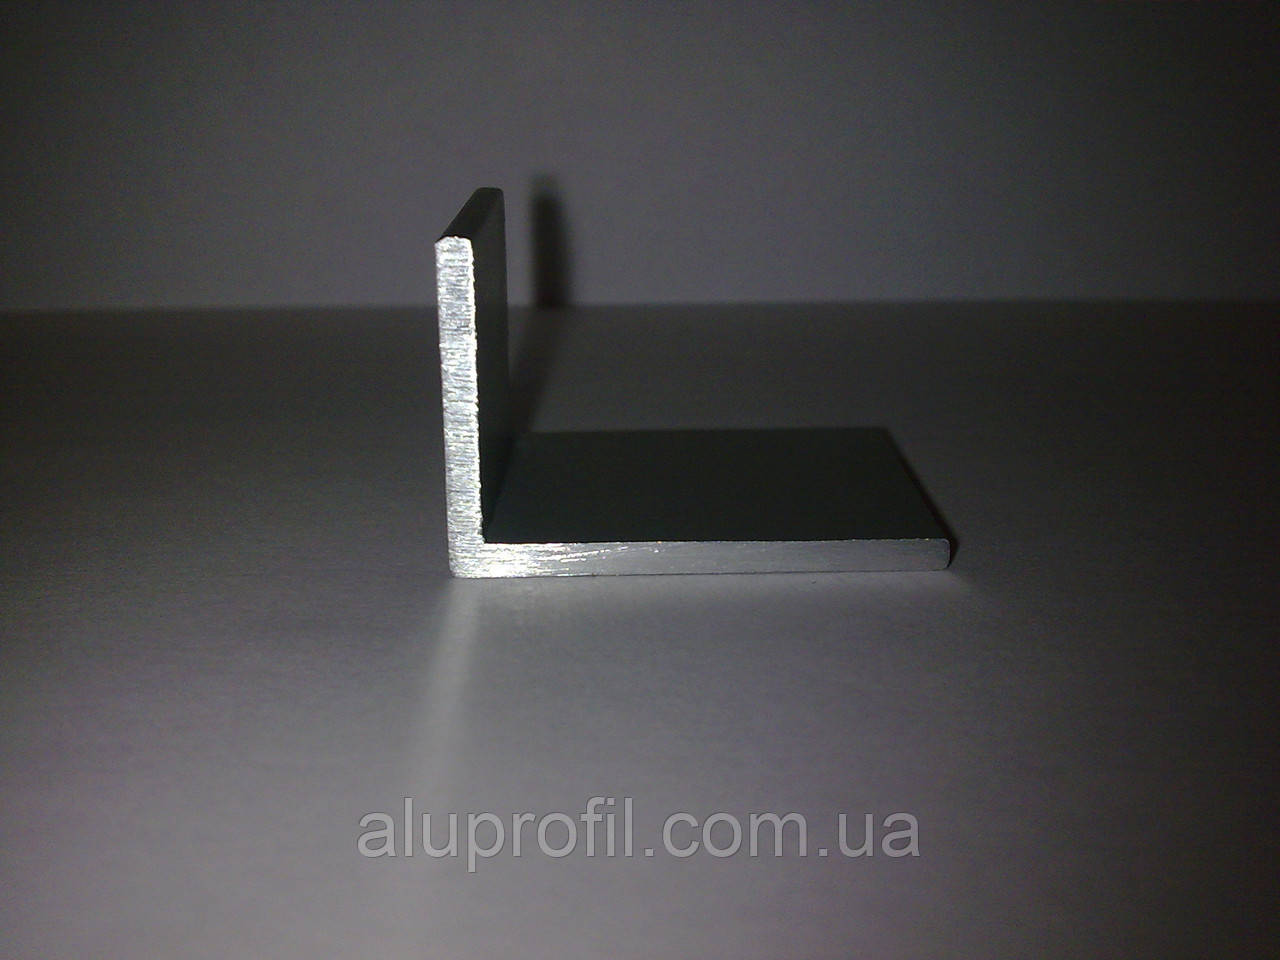 Алюмінієвий профіль — кутник алюмінієвий 40х10х2 Б/П